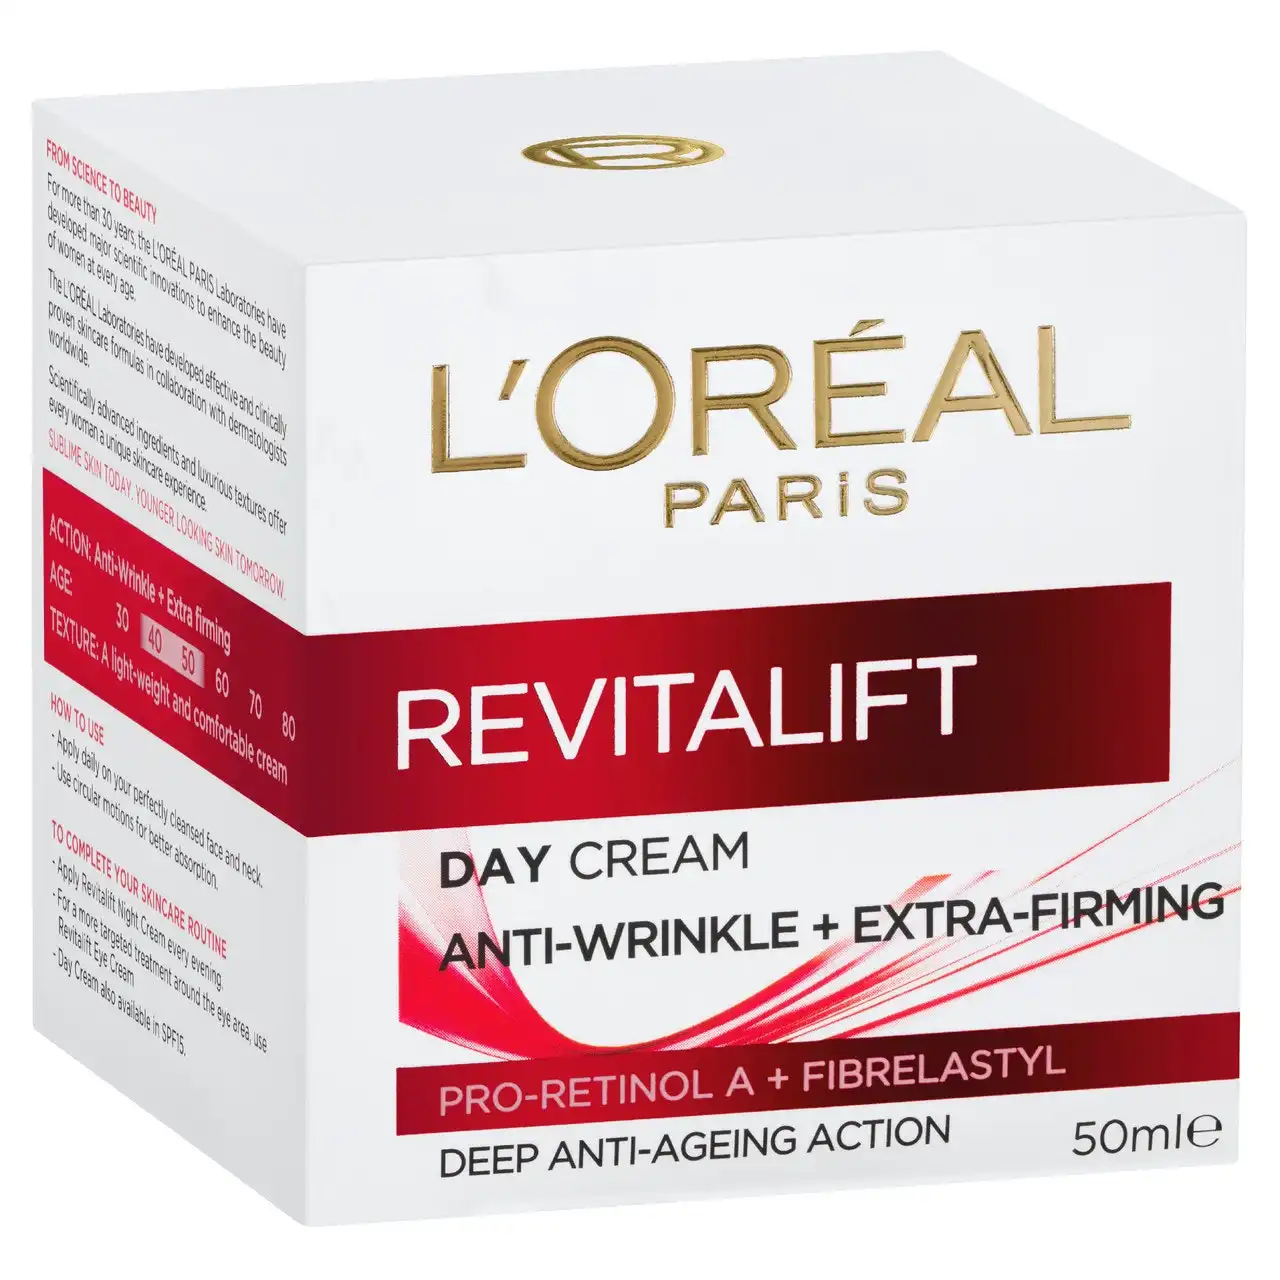 L'Oreal Paris Revitalift Day Cream 50ml